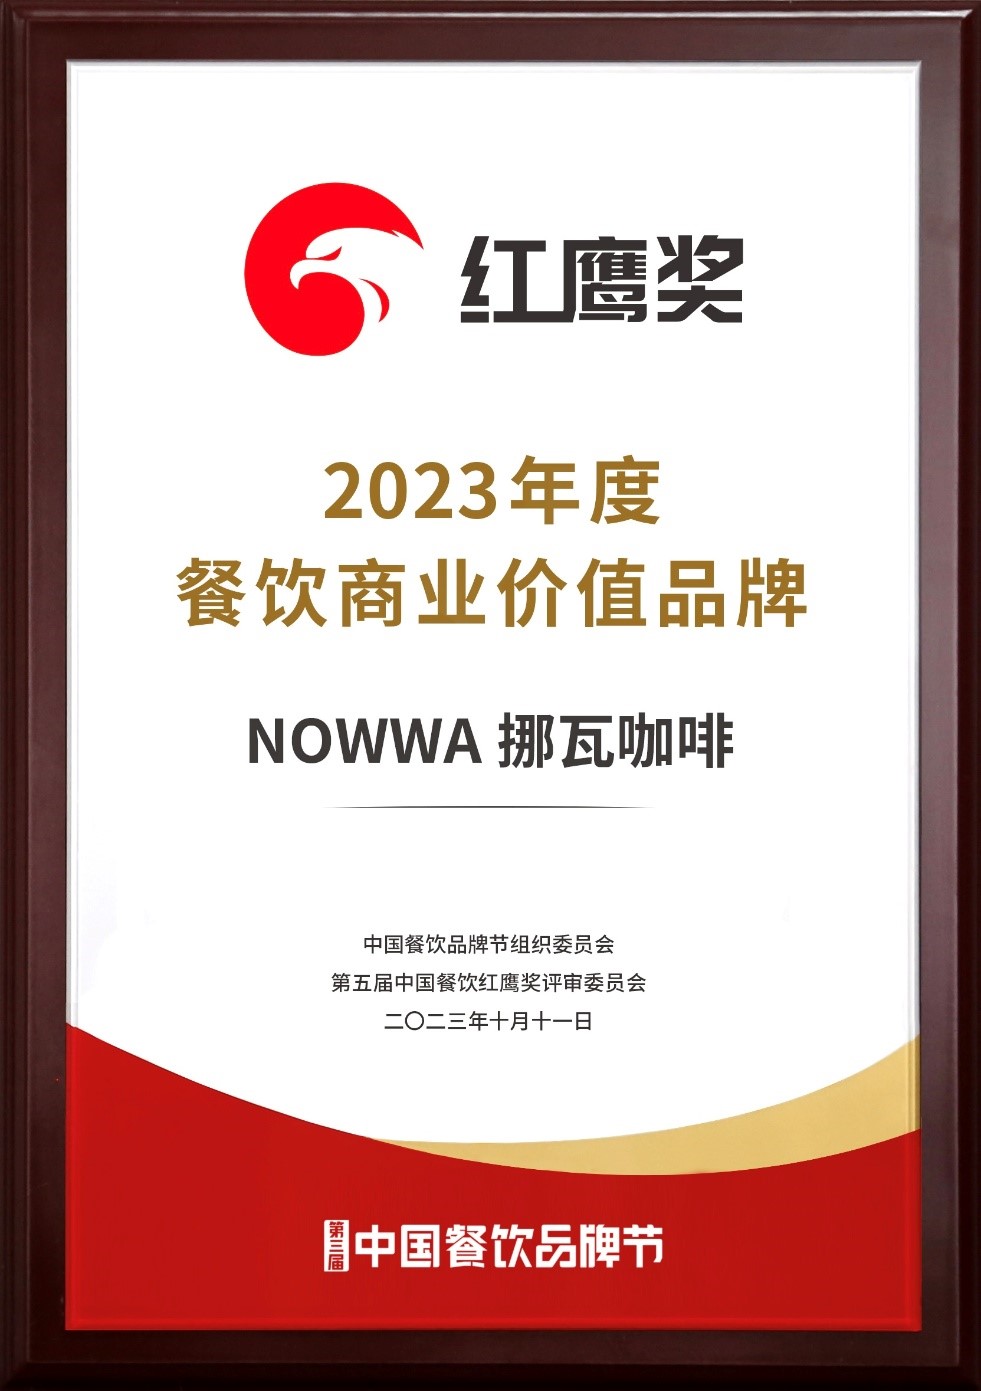 挪瓦咖啡荣获“2023年度餐饮商业价值品牌”   二次上榜彰显品牌实力